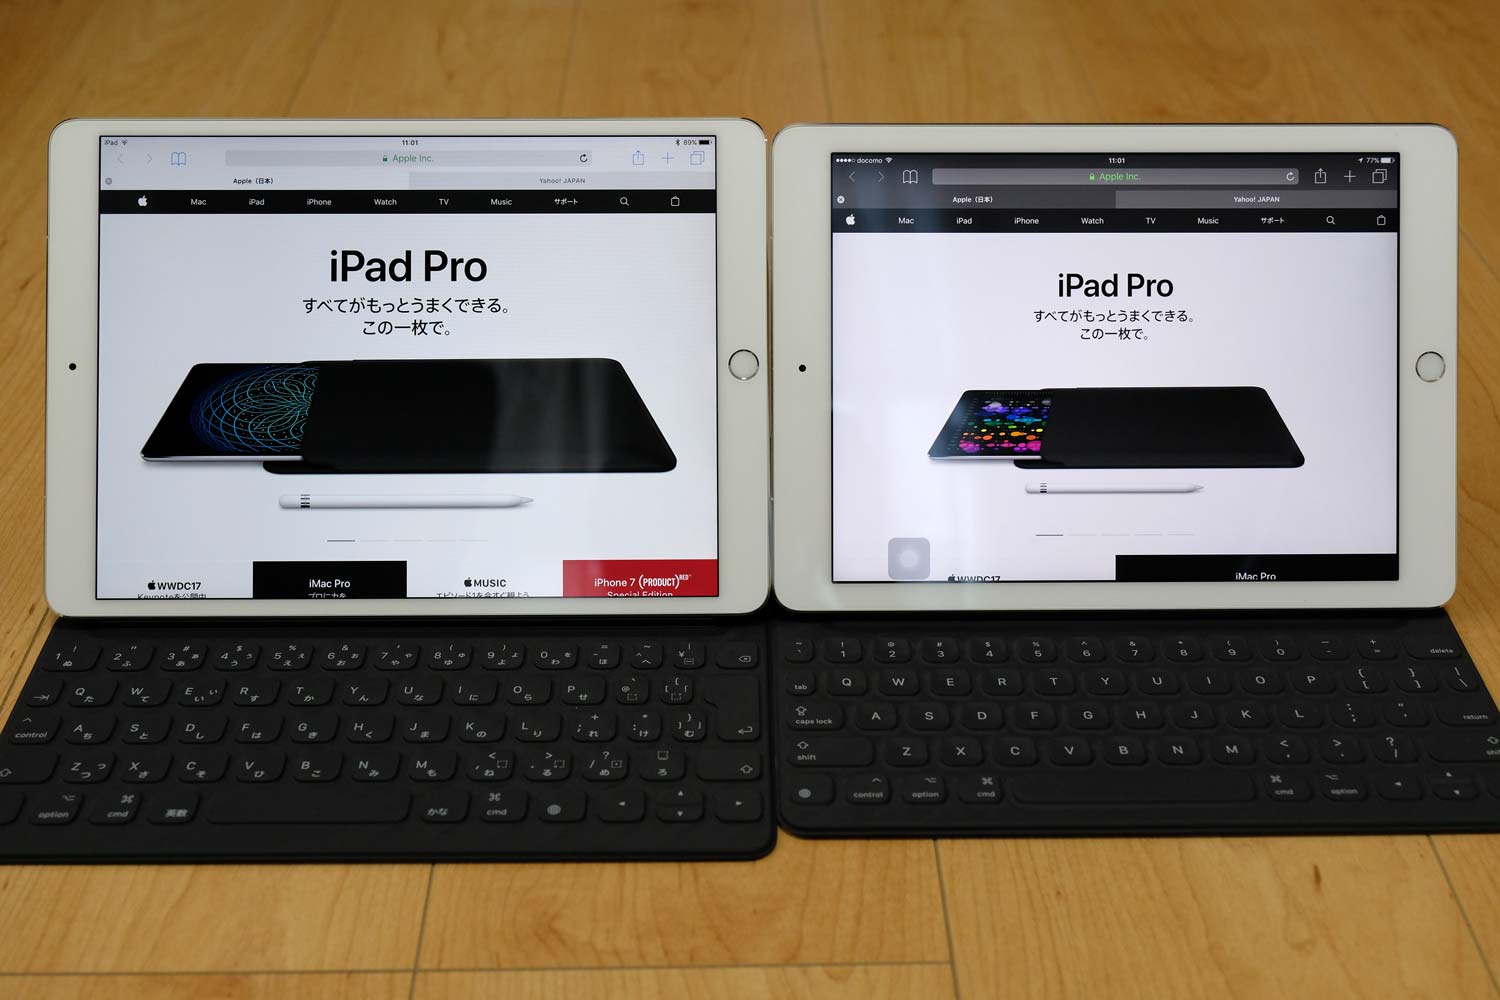 iPad Pro 10.5とiPad Pro 9.7 比較